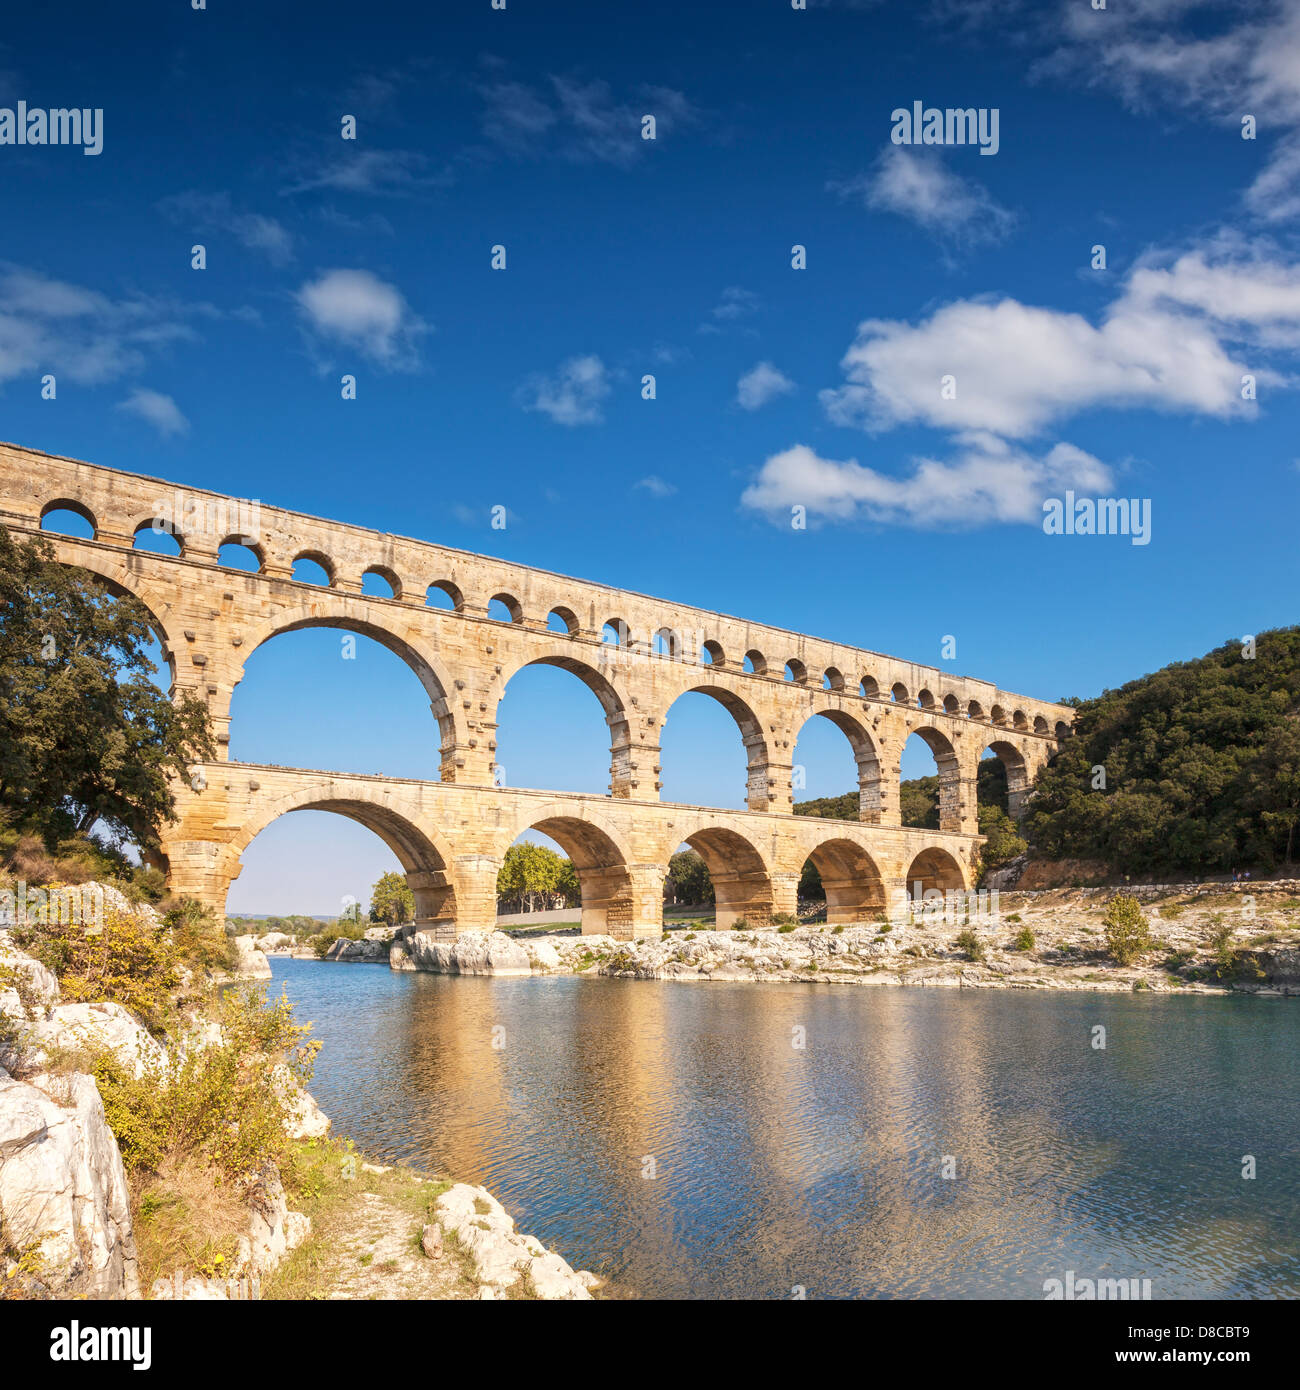 Pont du Gard römischen Aquädukt Languedoc-Roussillon Frankreich. Die 2000 Jahre alte Roman Aquaduct ist eine große Touristenattraktion. Stockfoto